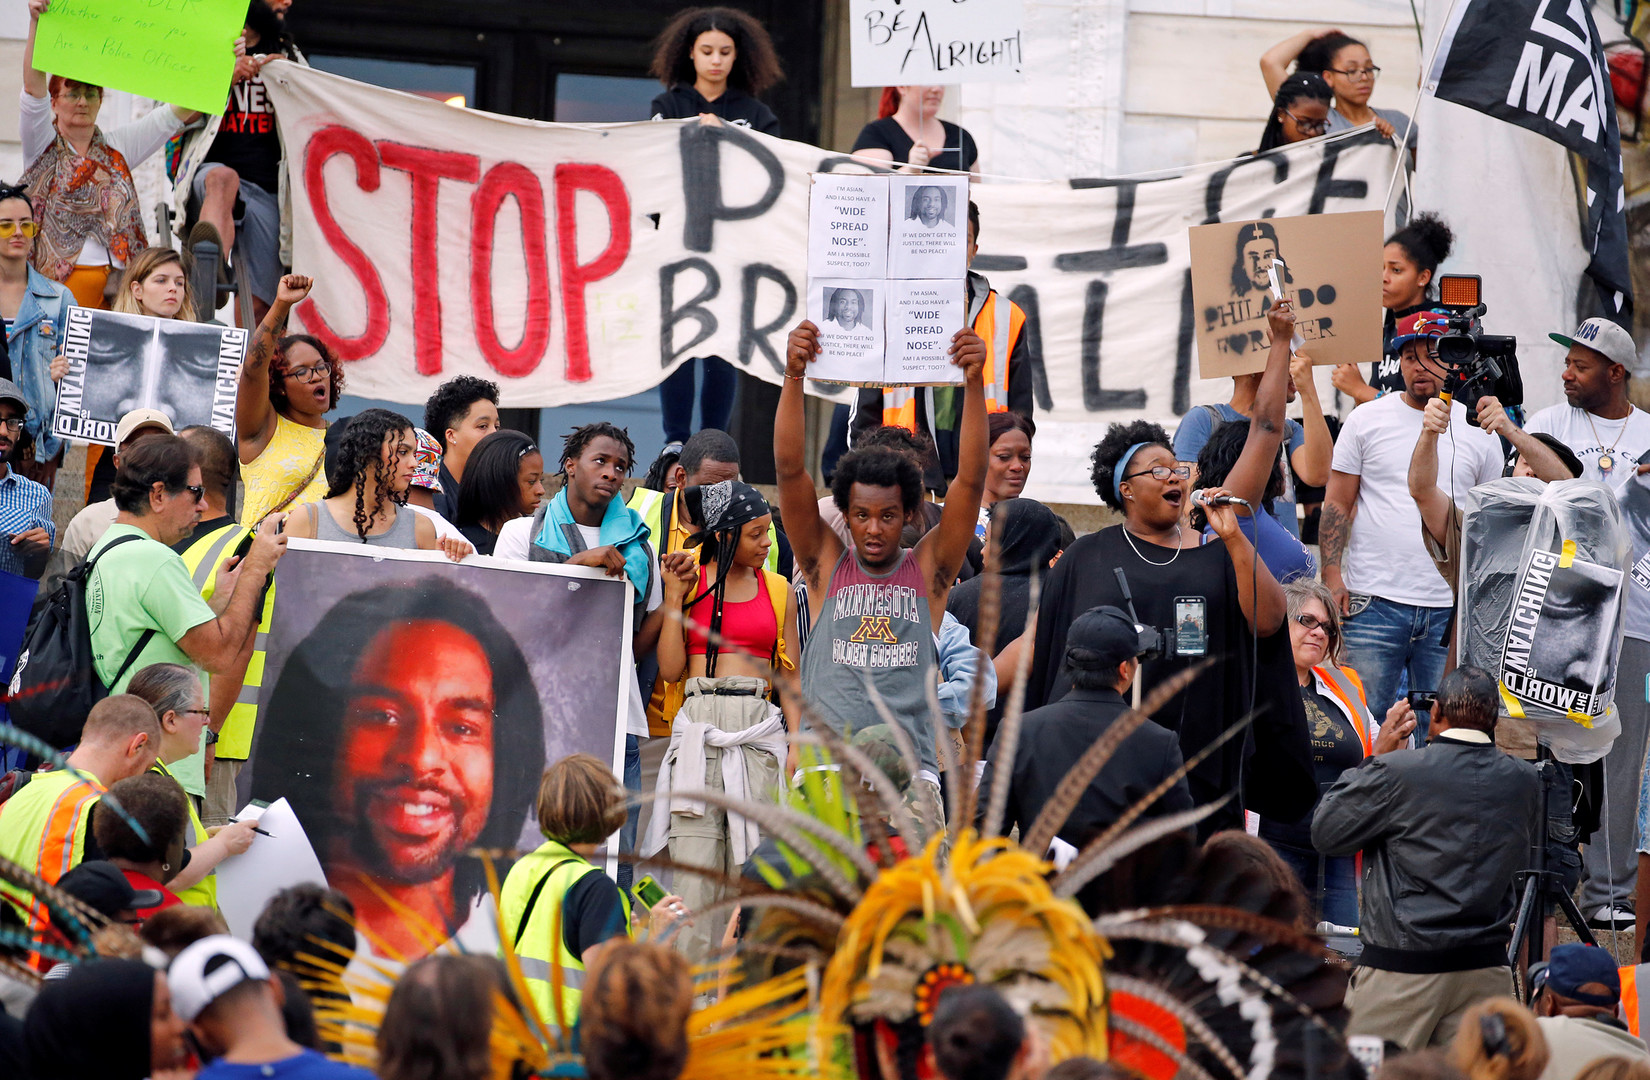 Etats-Unis : 18 manifestants arrêtés après l'acquittement d'un policier qui avait abattu un Noir